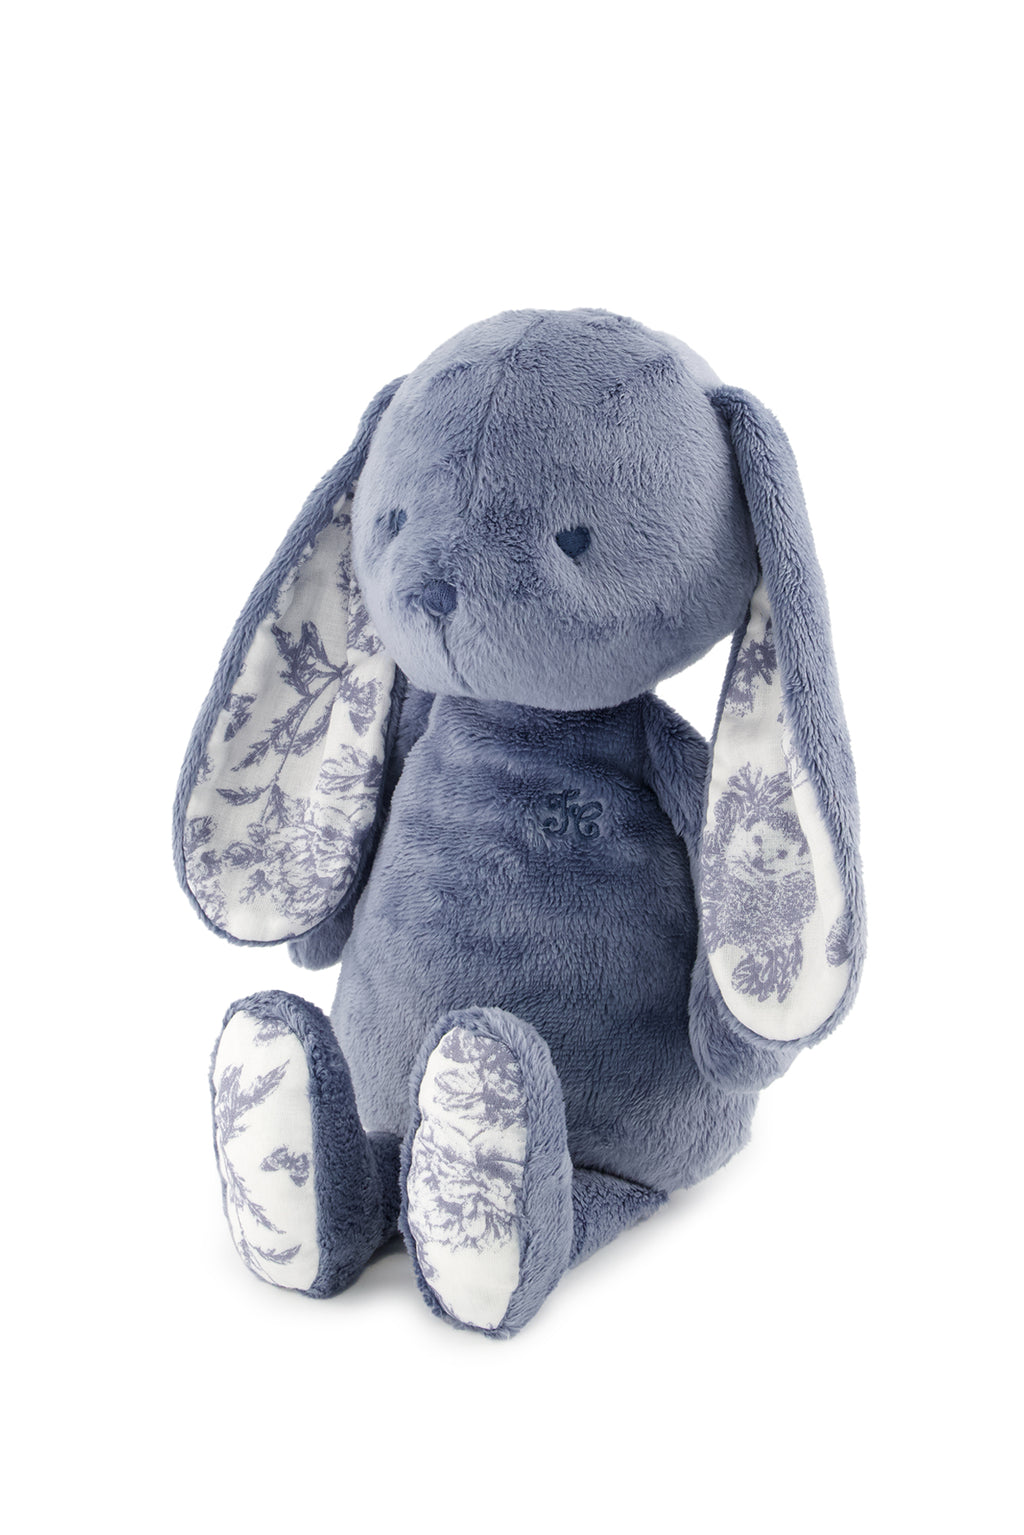 Augustin the rabbit - Print inspiration Toile de Jouy Blue 25cm